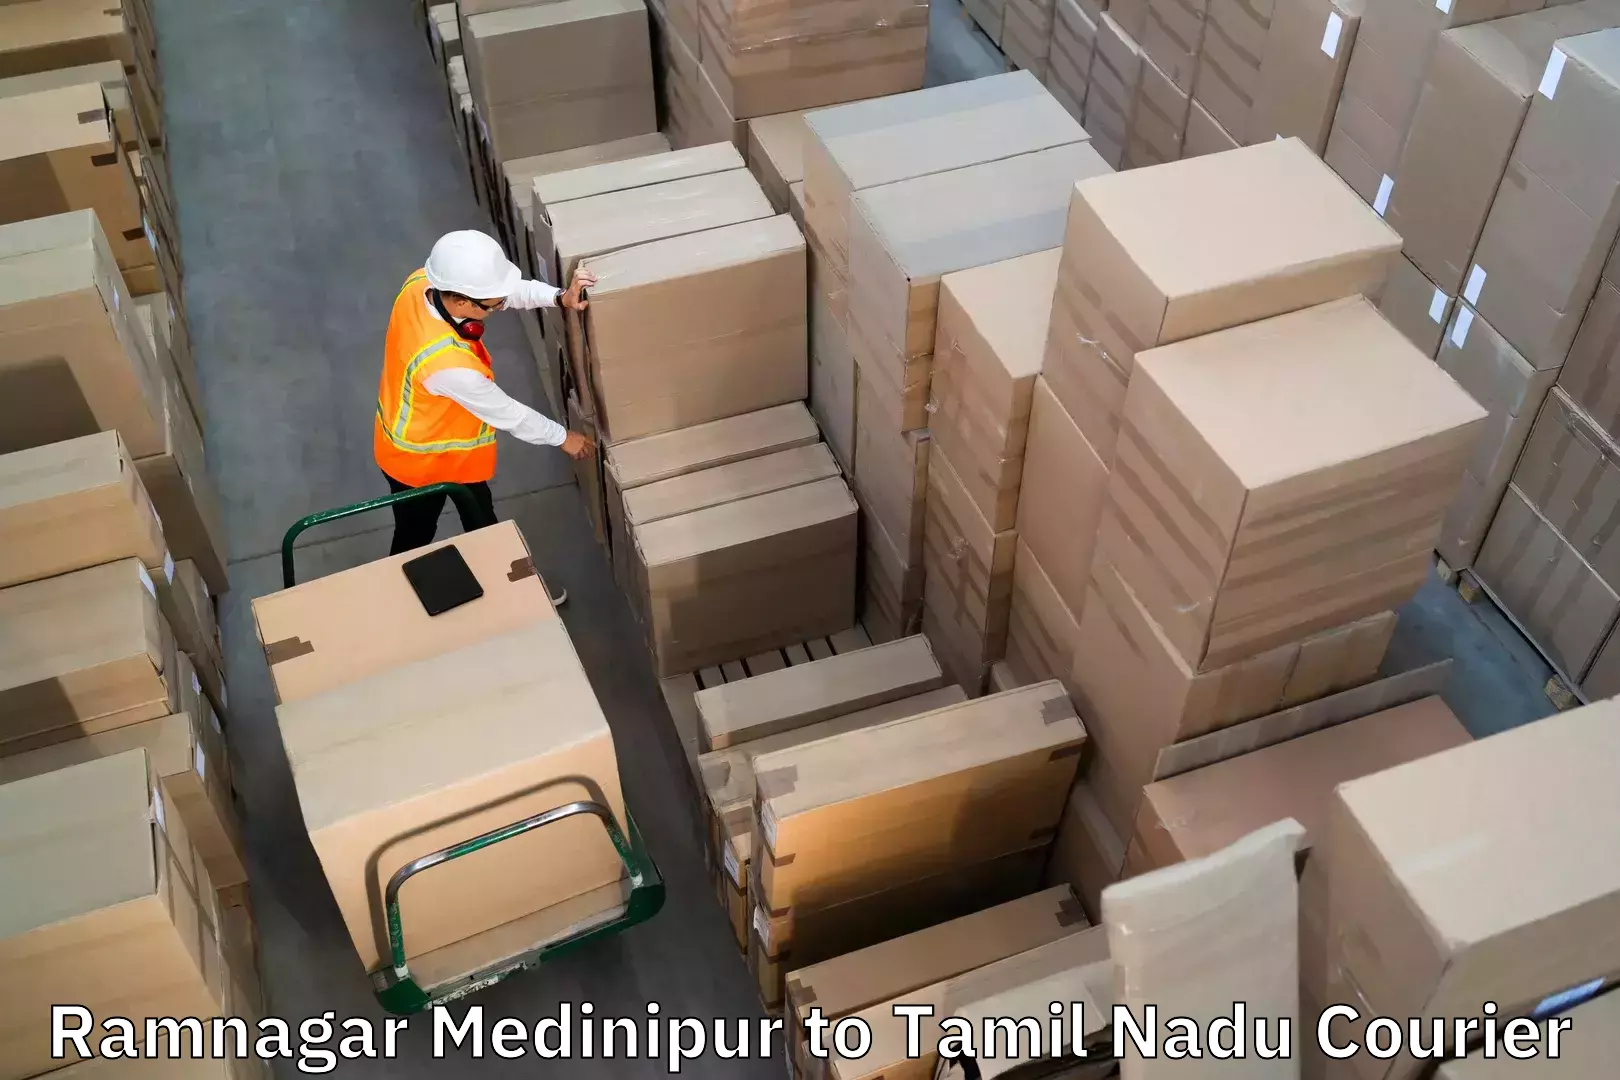 Baggage transport scheduler Ramnagar Medinipur to Karambakkudi